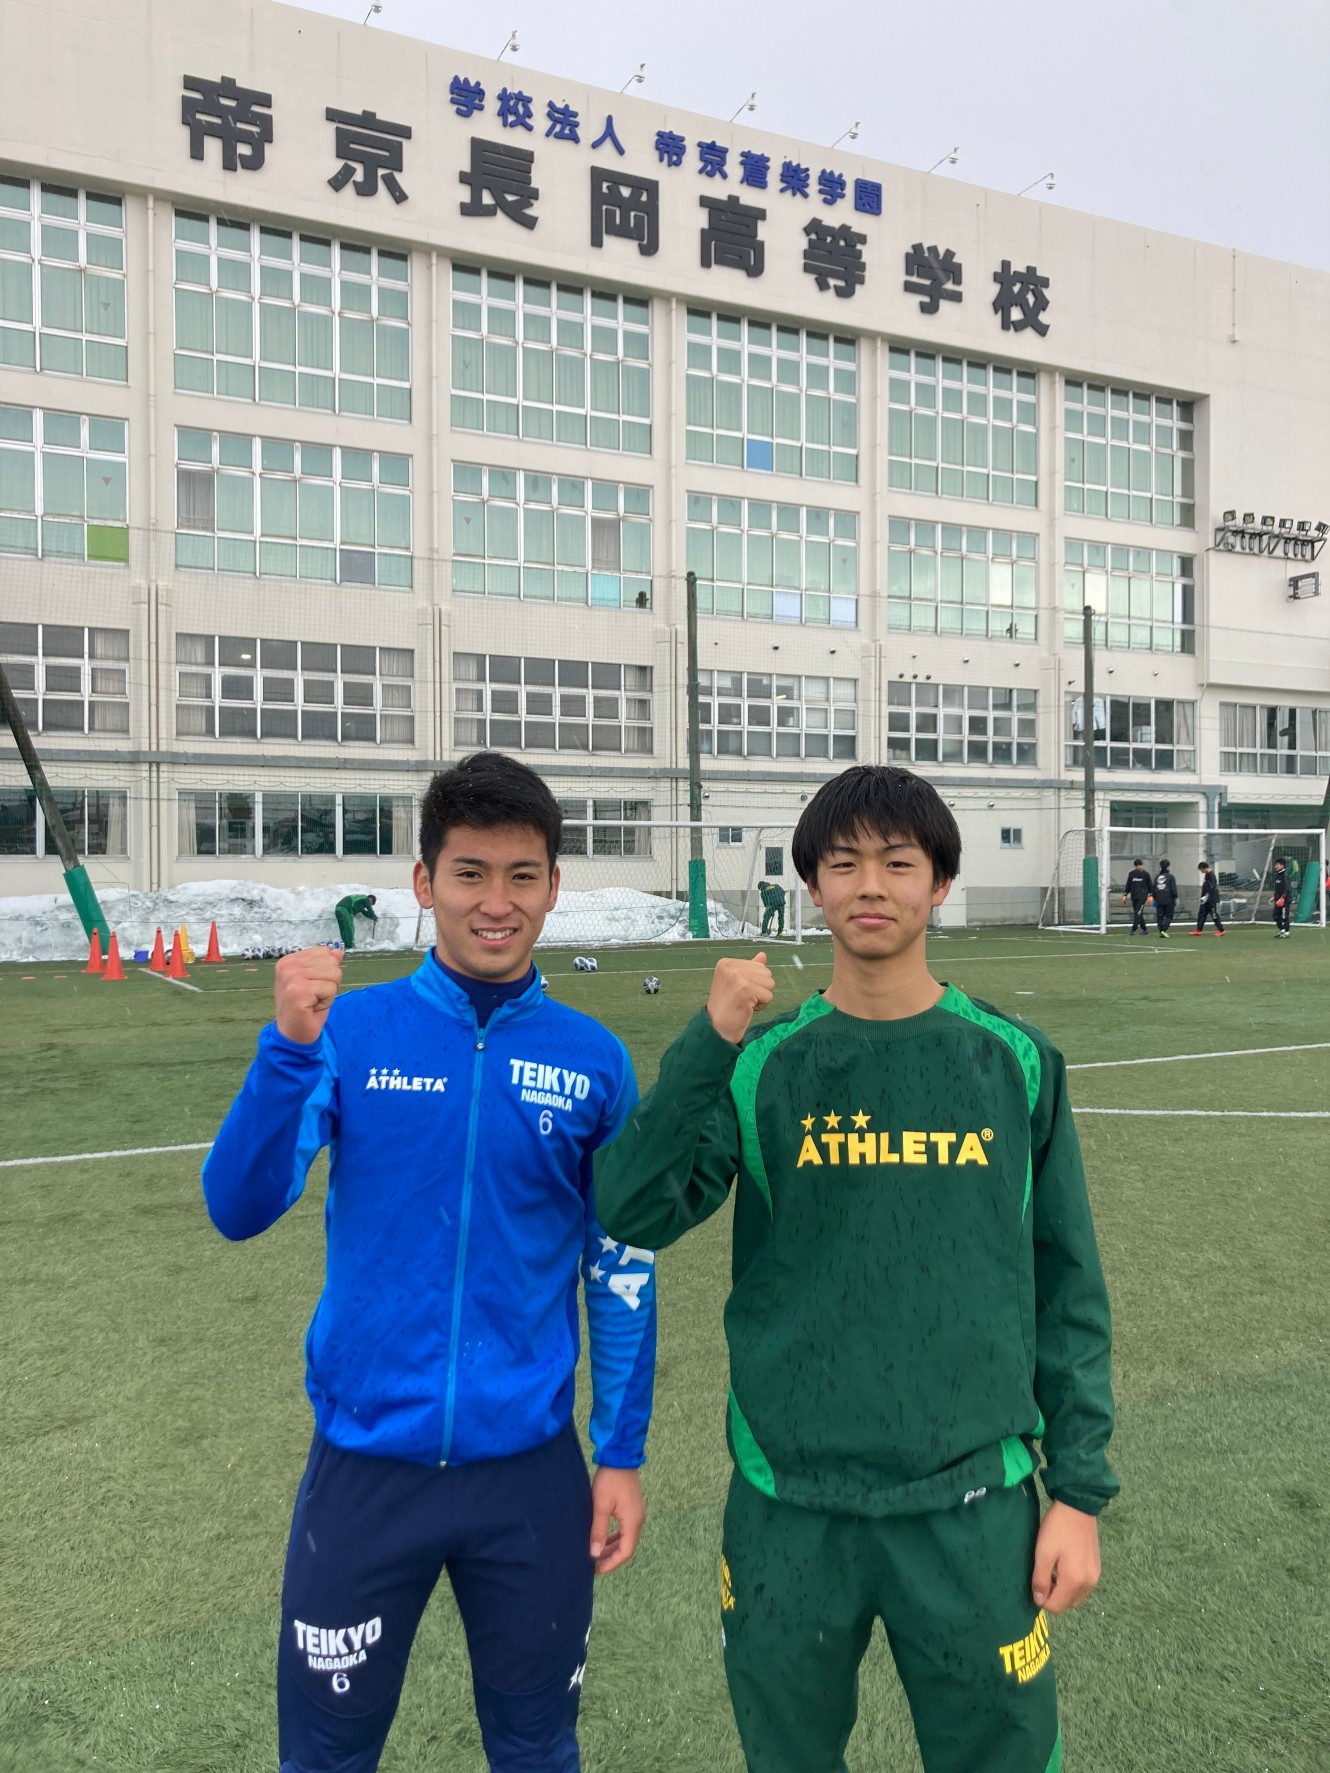 帝京 高校 長岡 サッカー 新潟の高校サッカー史を塗り替えた、「帝京長岡高等学校サッカー部」の今。